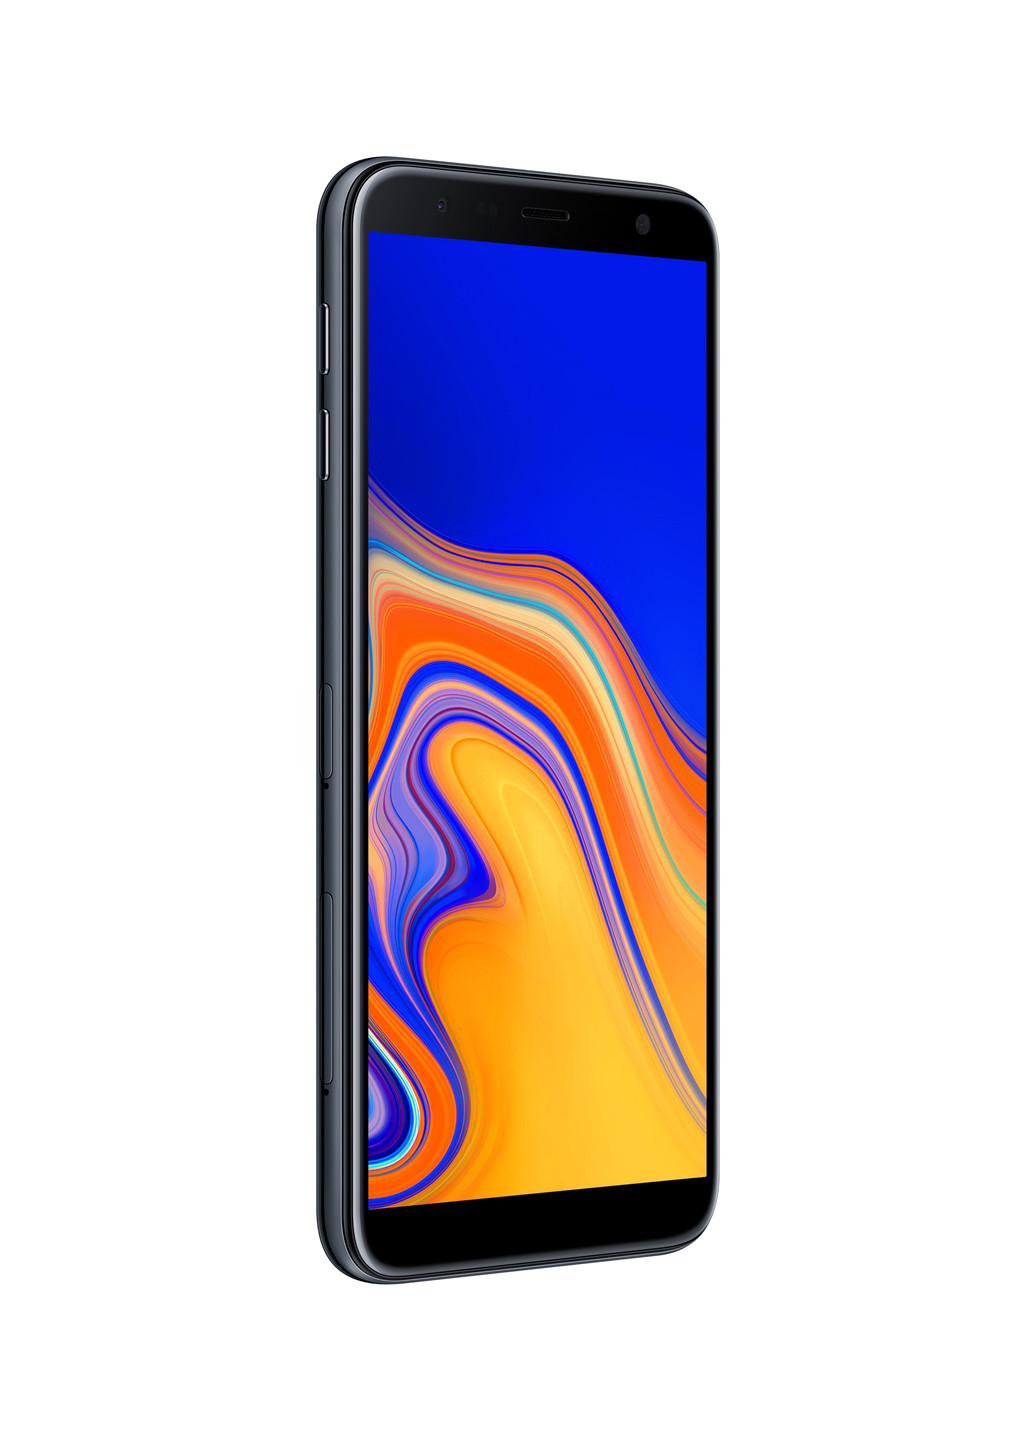 Смартфон Samsung galaxy j4+ 2/16gb black (sm-j415fzknsek) (131063858)